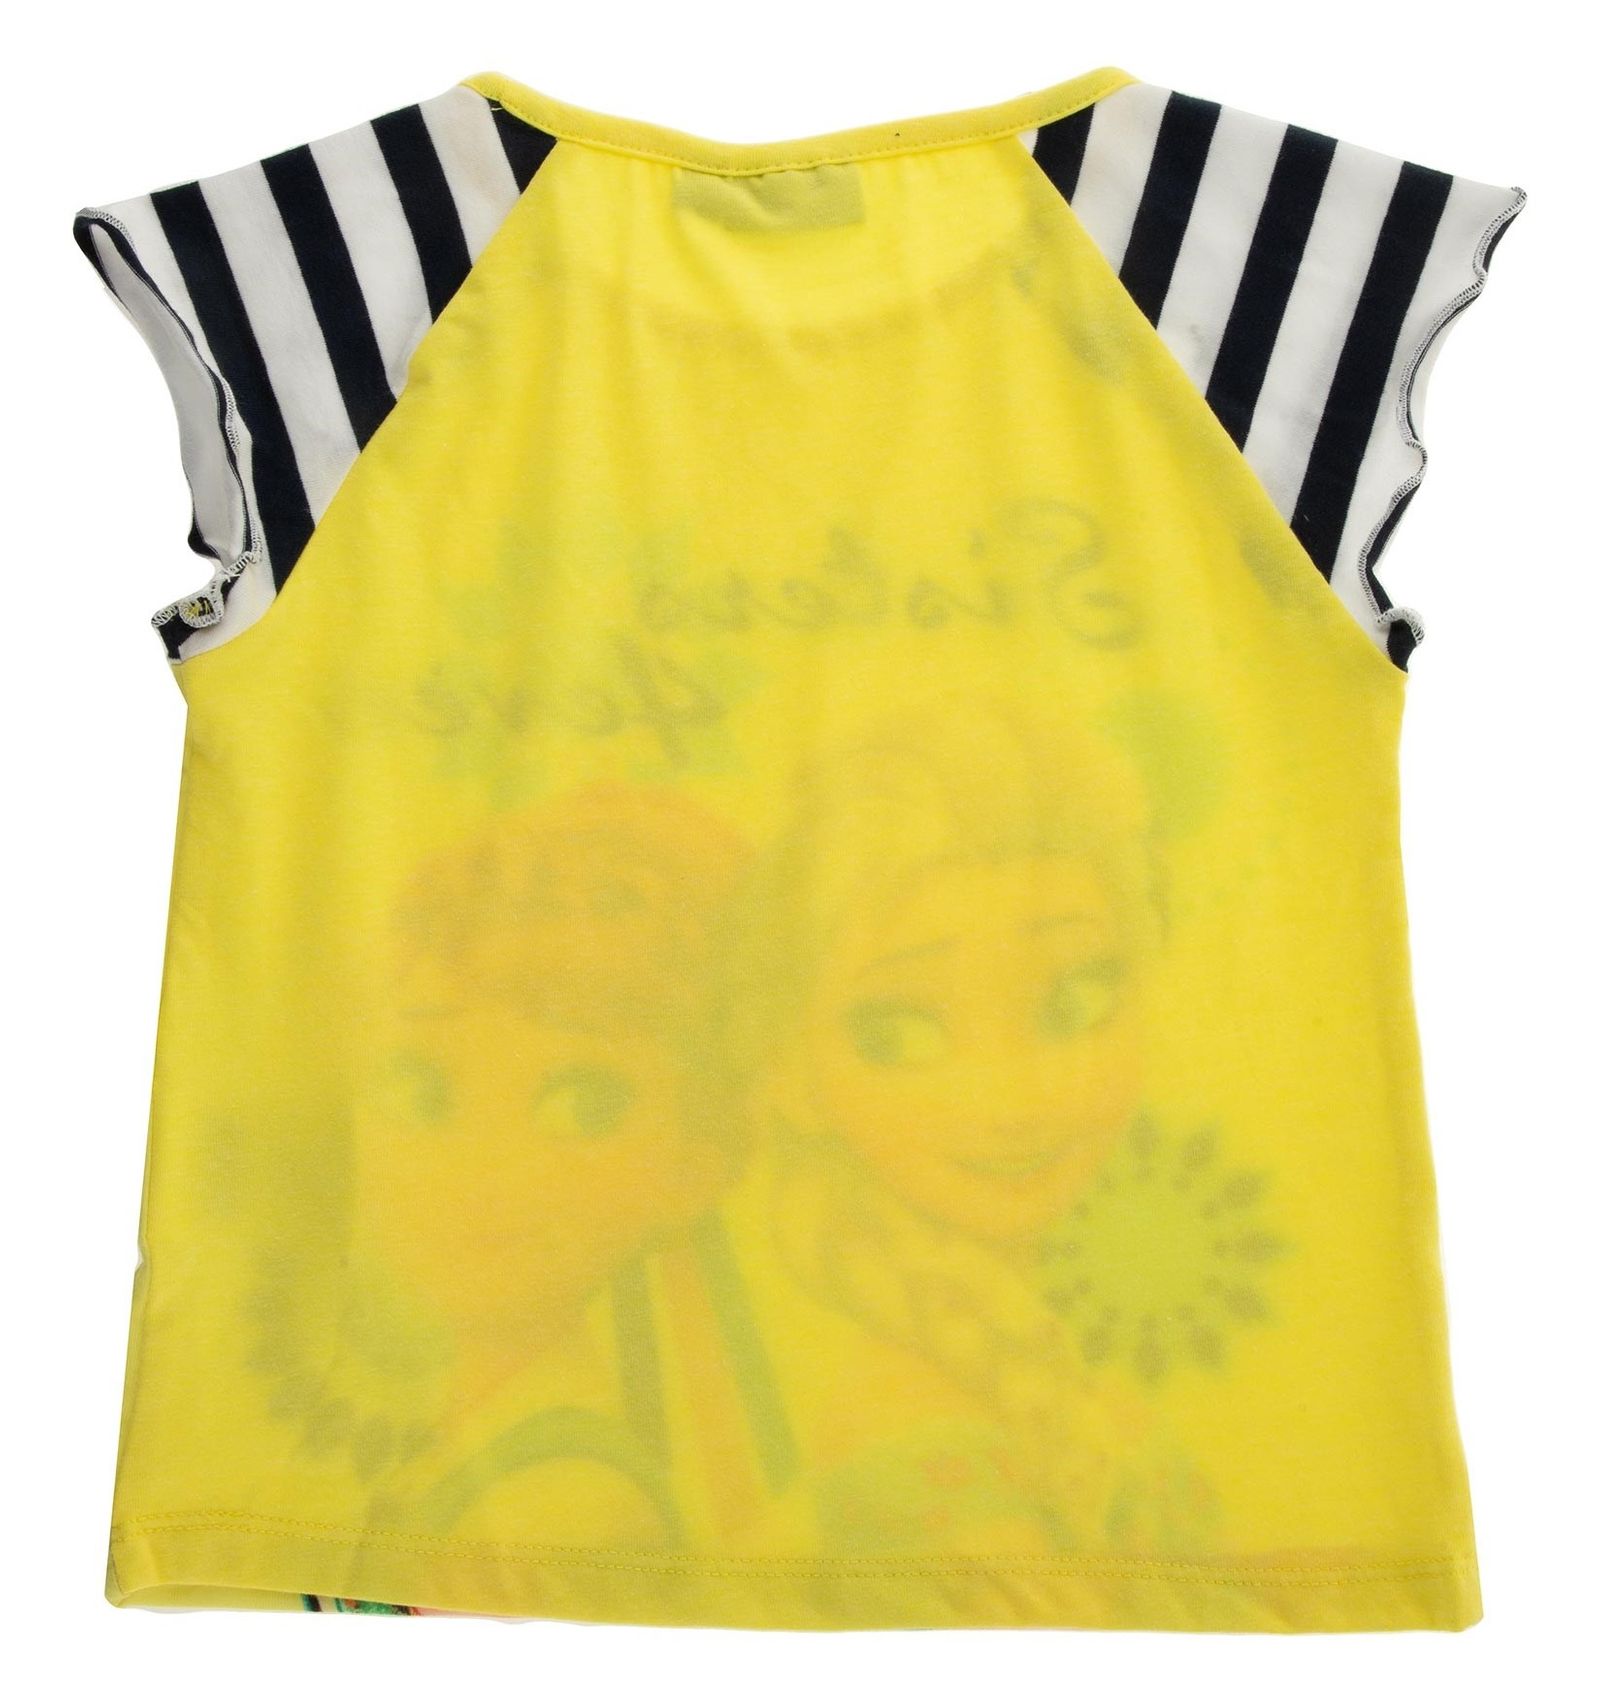 تی شرت و شلوارک دخترانه - بلوکیدز - زرد - 4